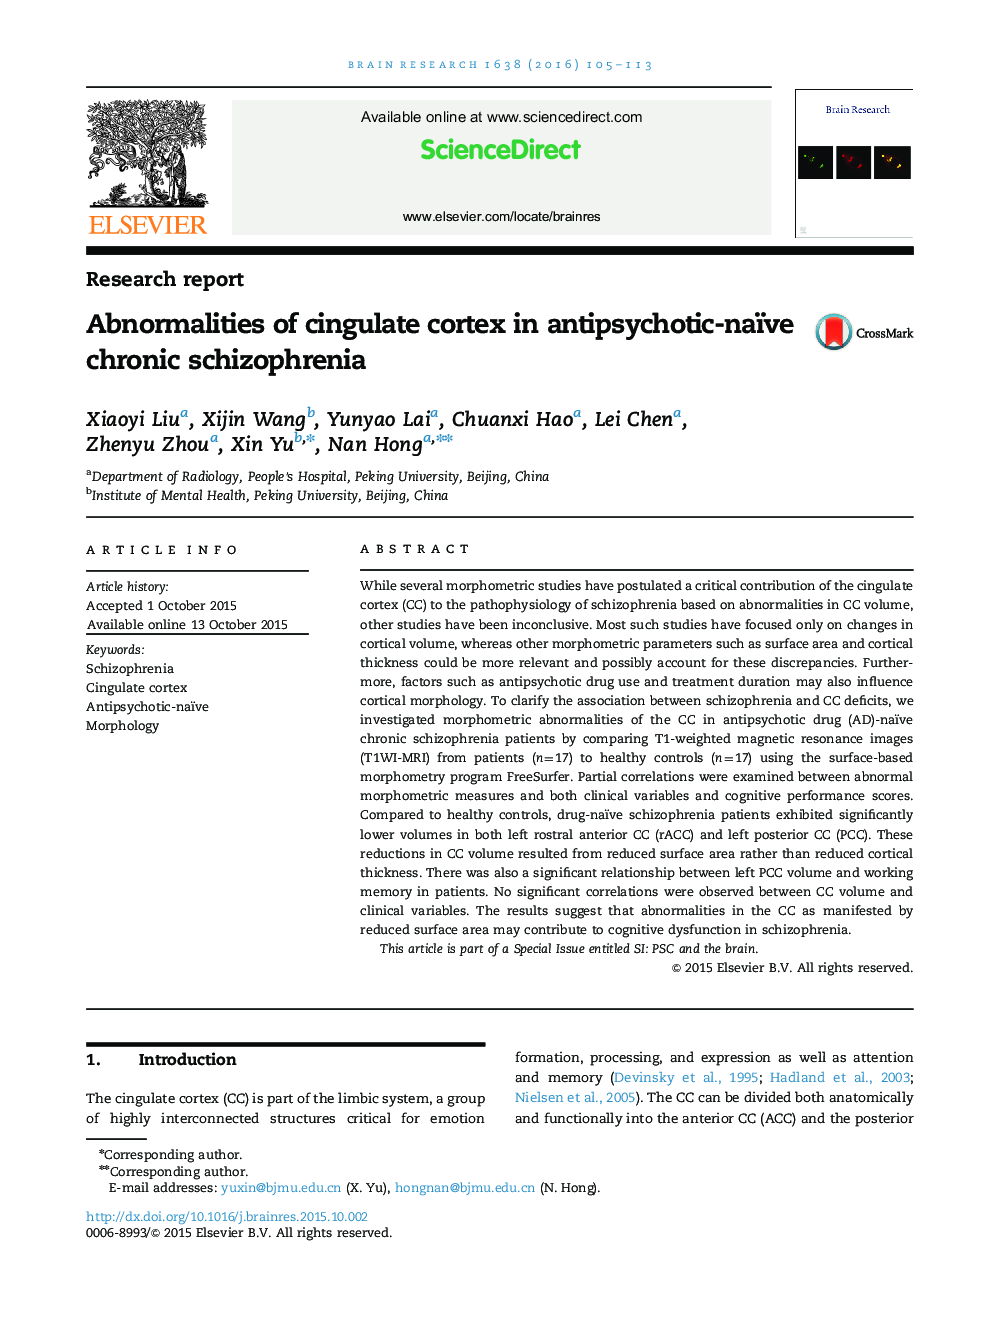 Abnormalities of cingulate cortex in antipsychotic-naïve chronic schizophrenia